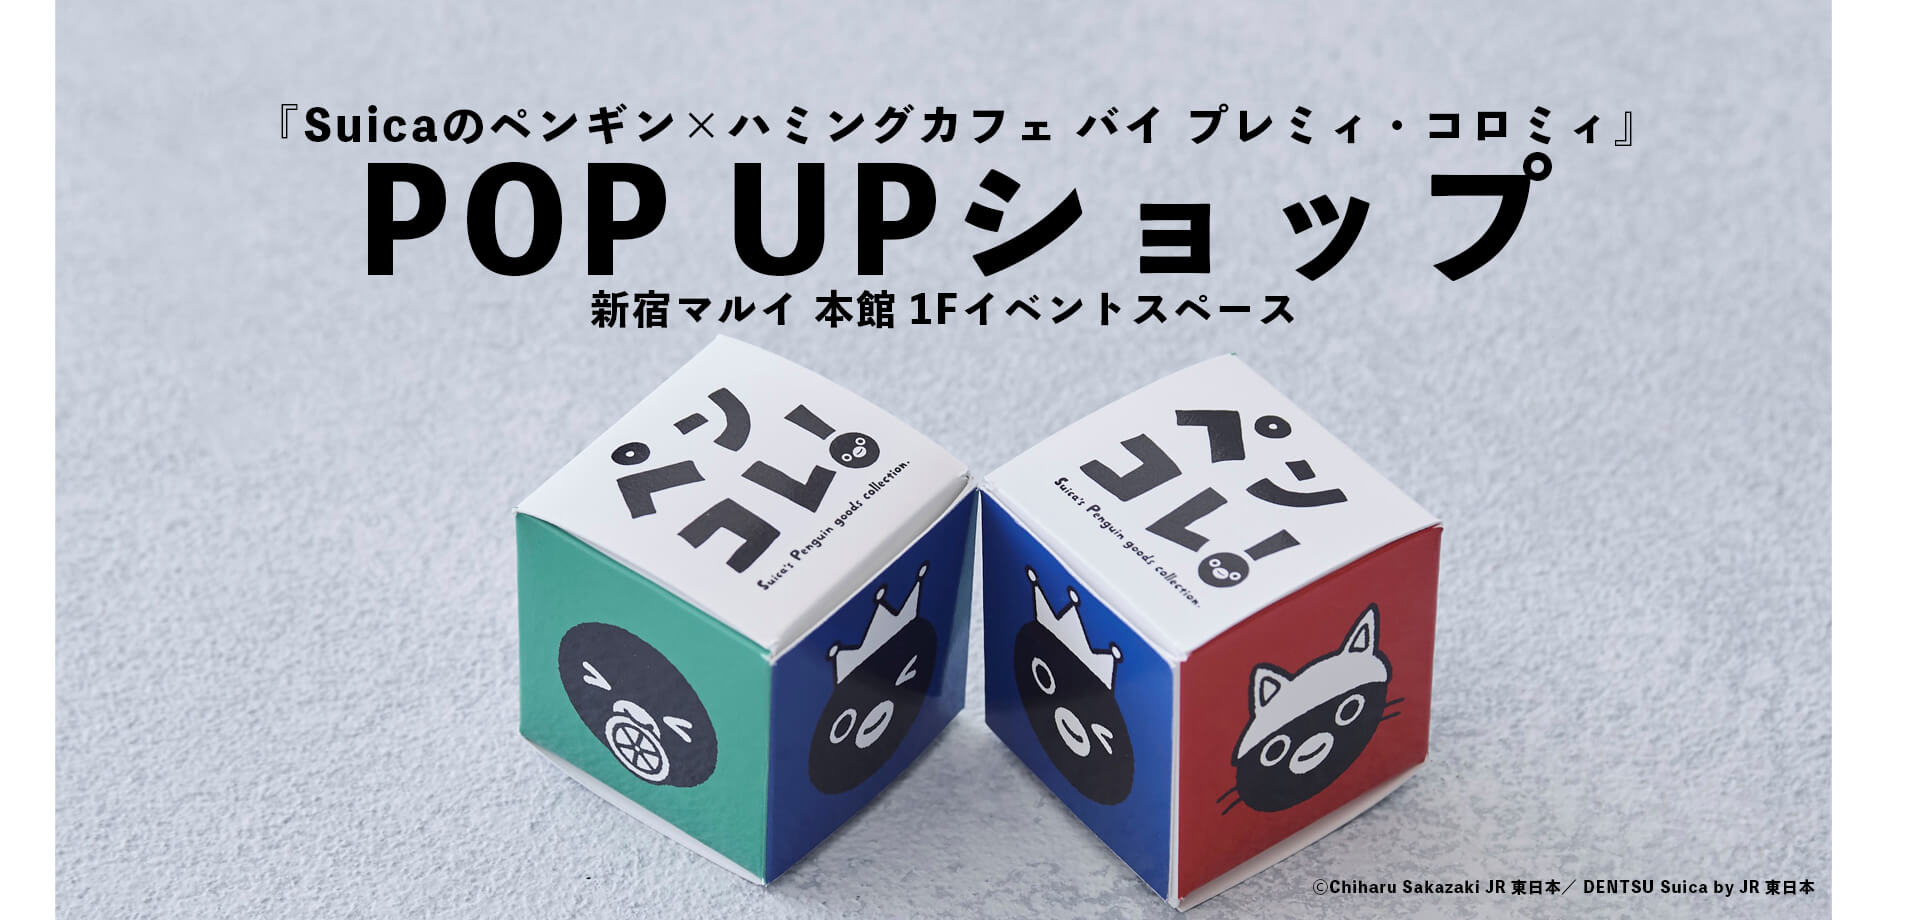 『Suicaのペンギン×ハミングカフェ バイ プレミィ・コロミィ』POP UPショップ 新宿マルイ 本館